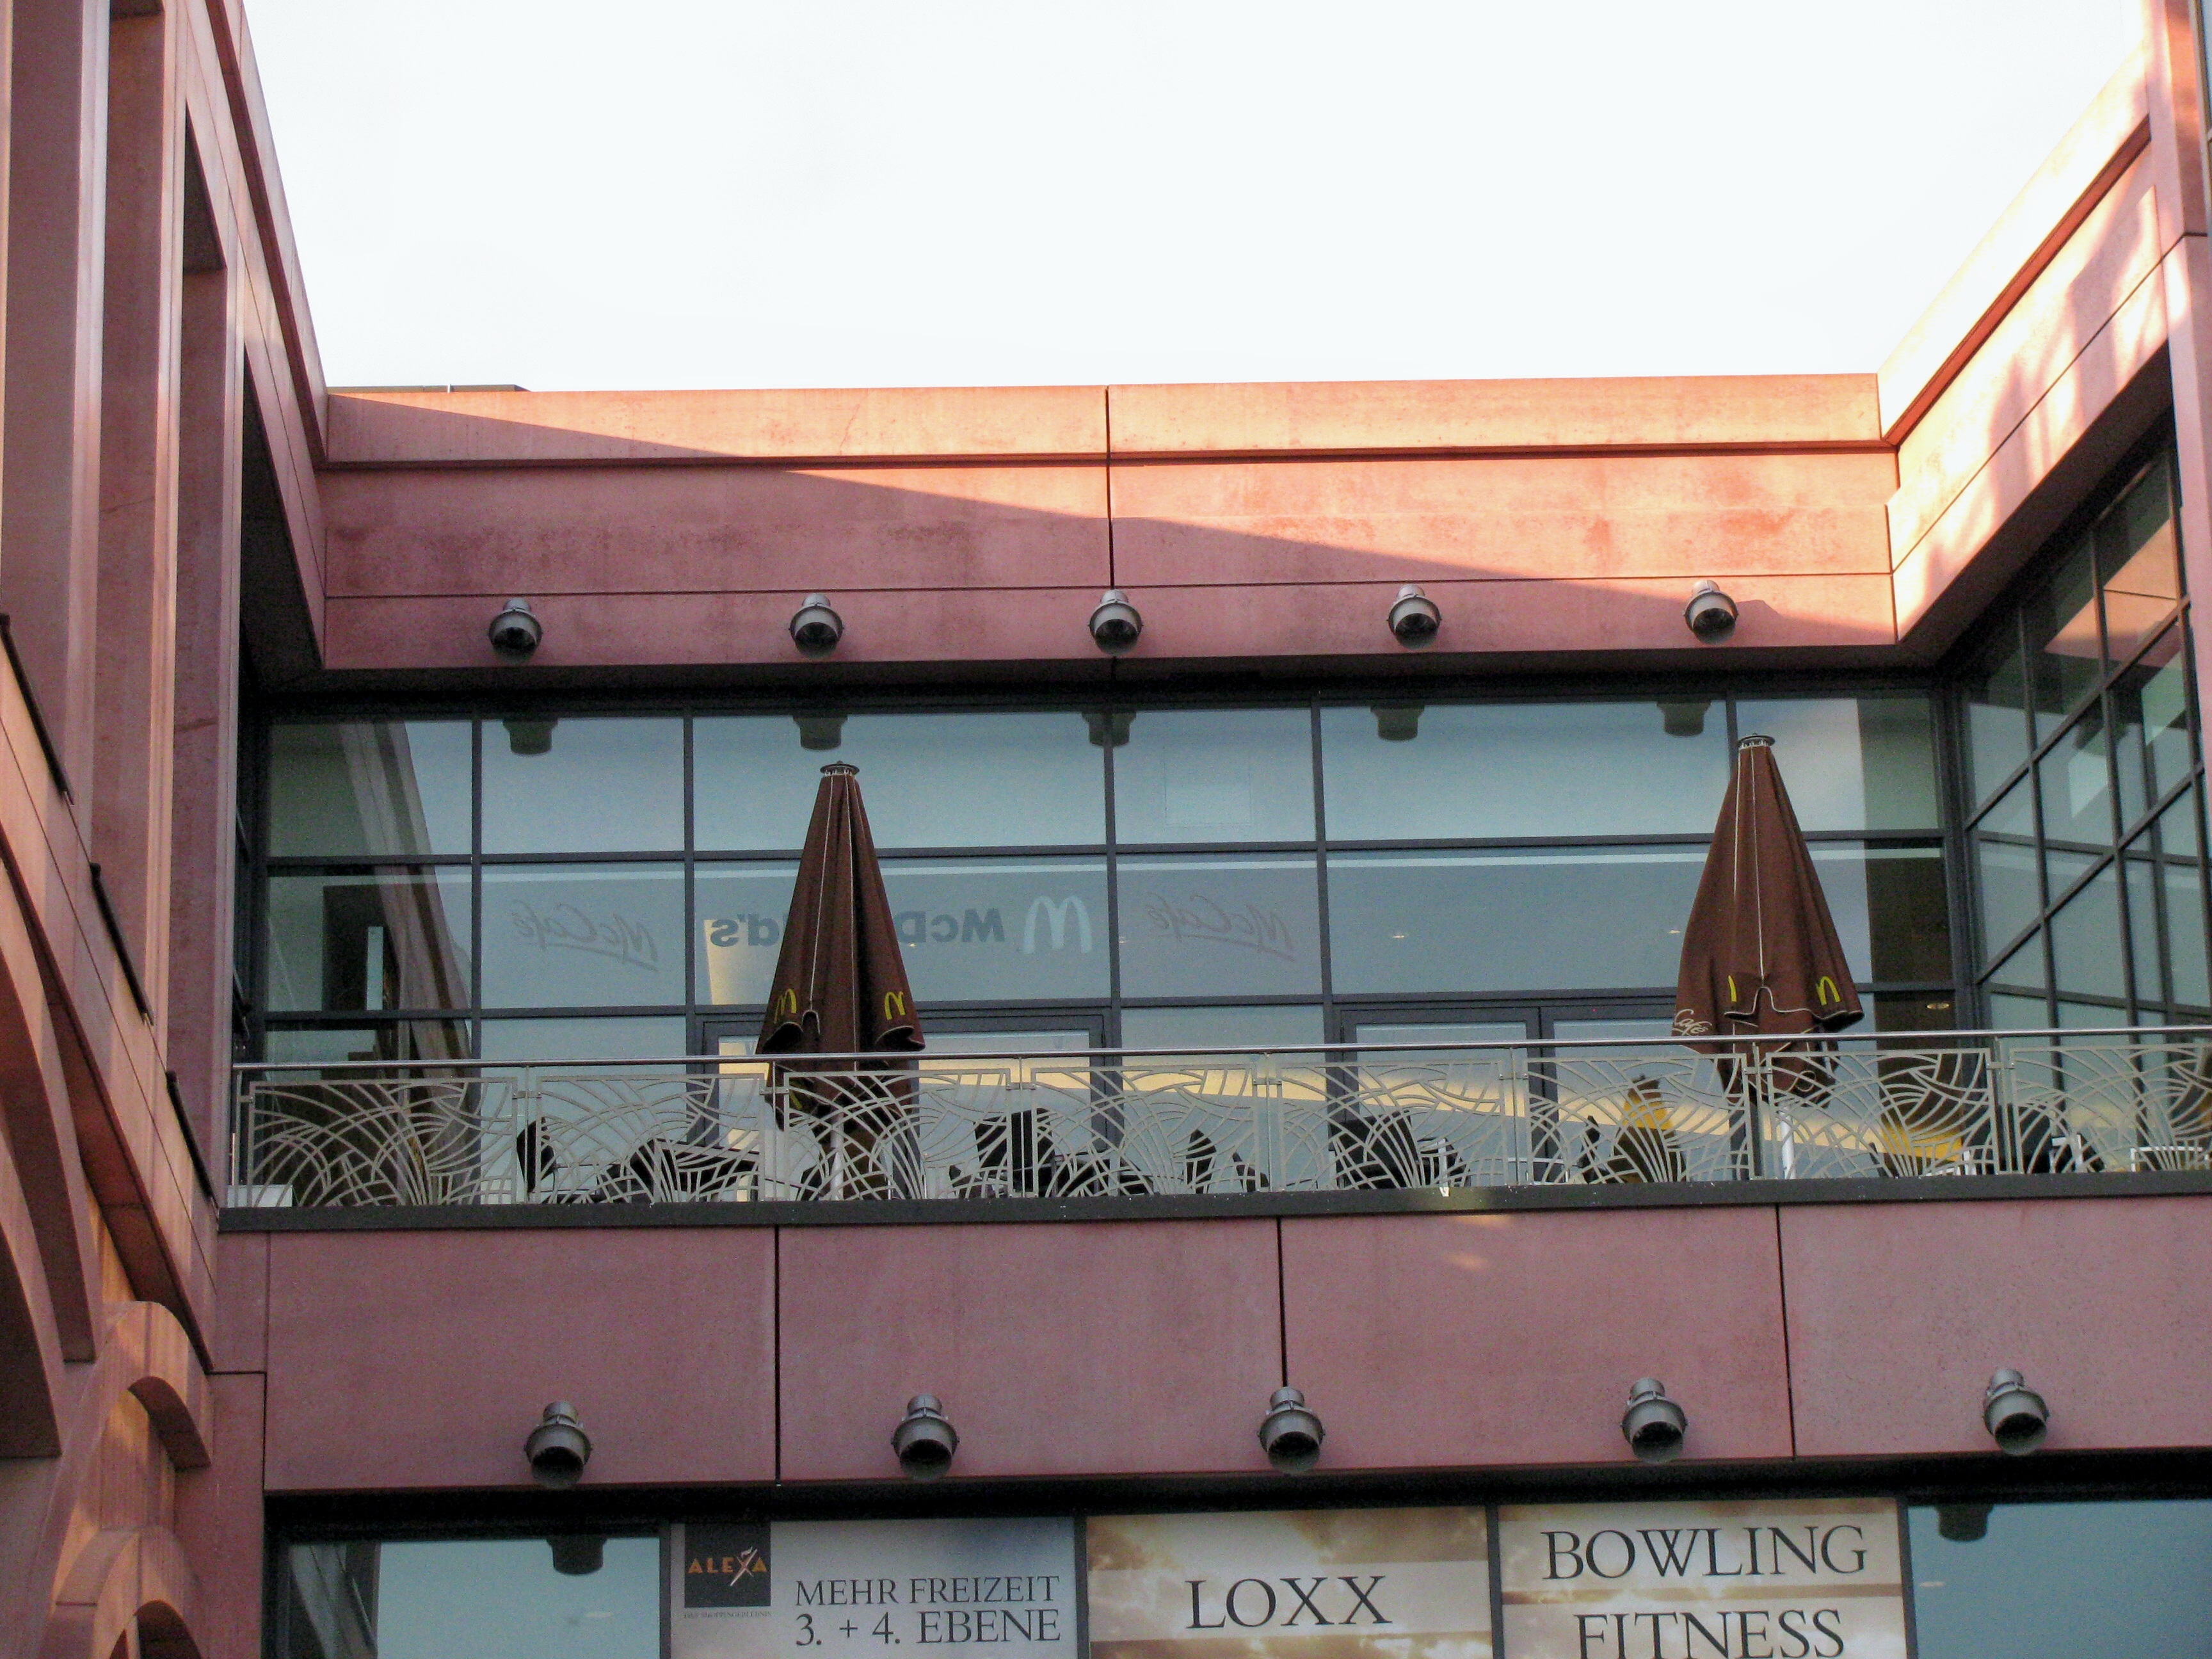 Die Terrasse von Mc Donald´s im ALEXA.